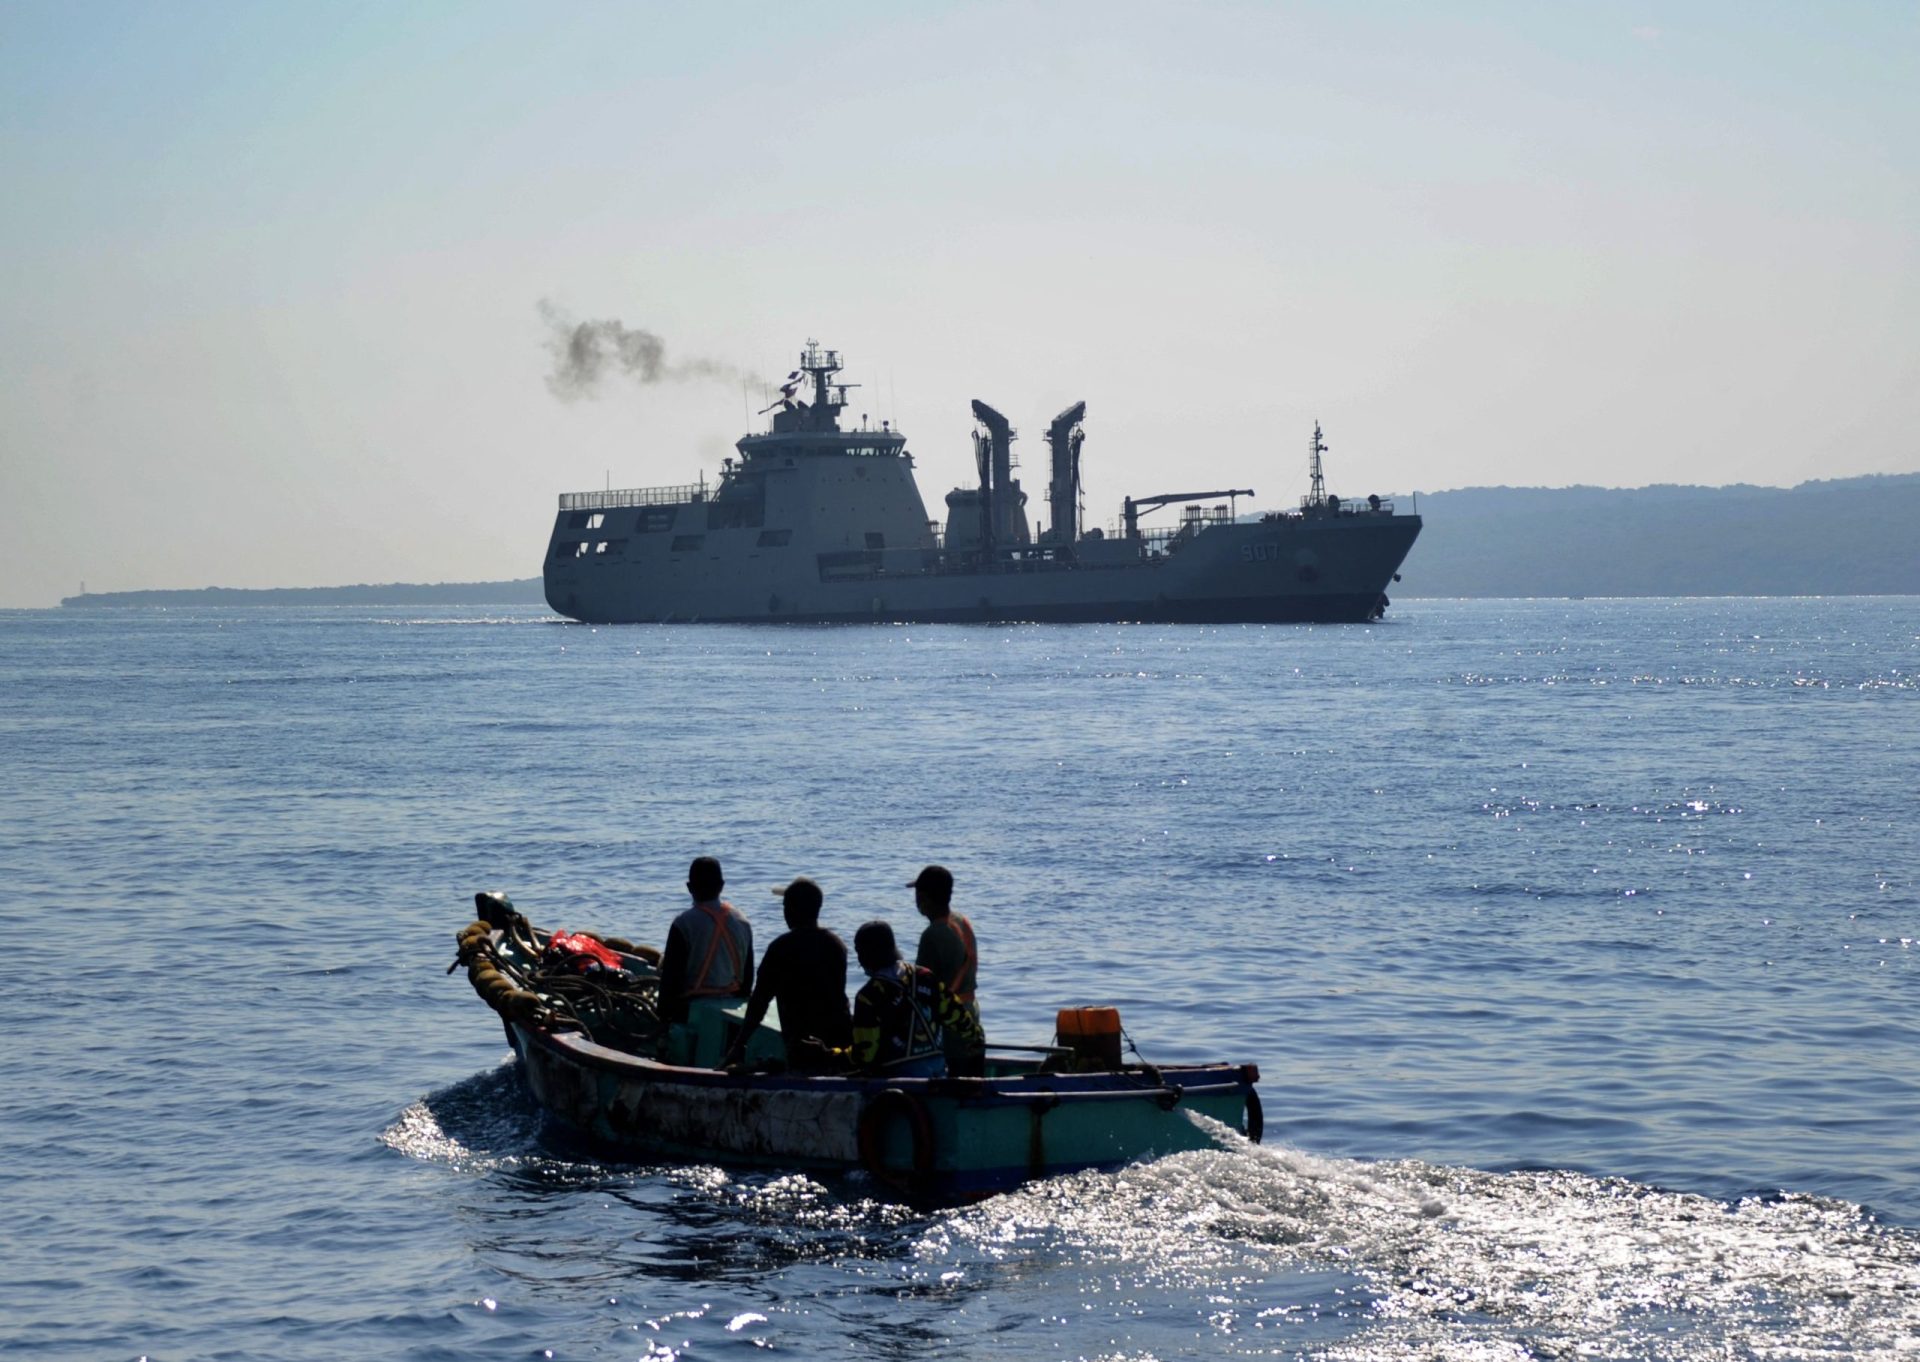 Indonésia estuda possibilidade de resgatar submarino que afundou com 53 tripulantes